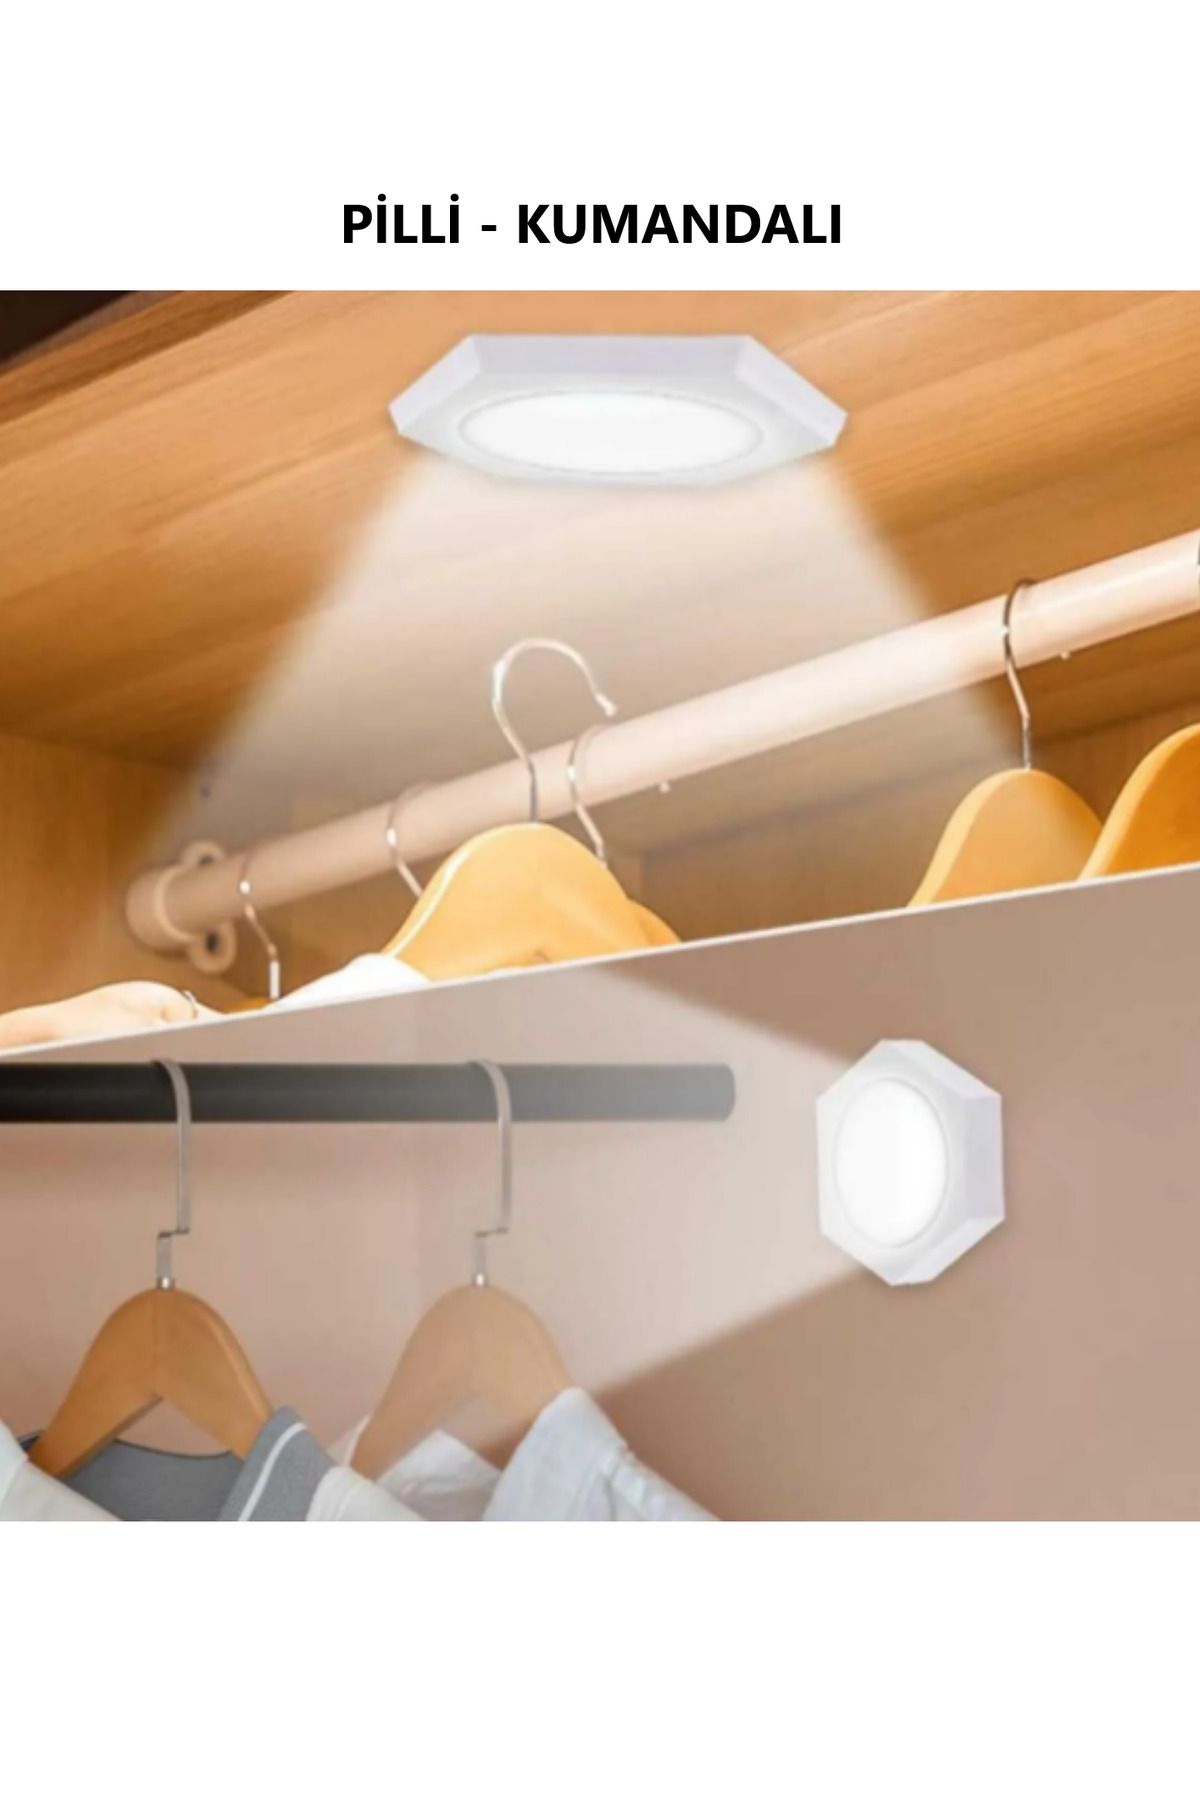 luxshome Kablosuz Yapışkanlı Kumandalı Mutfak Tezgah Altı Banyo Dolabı 3'Lü Kumandalı Ve Pilli Led Işık